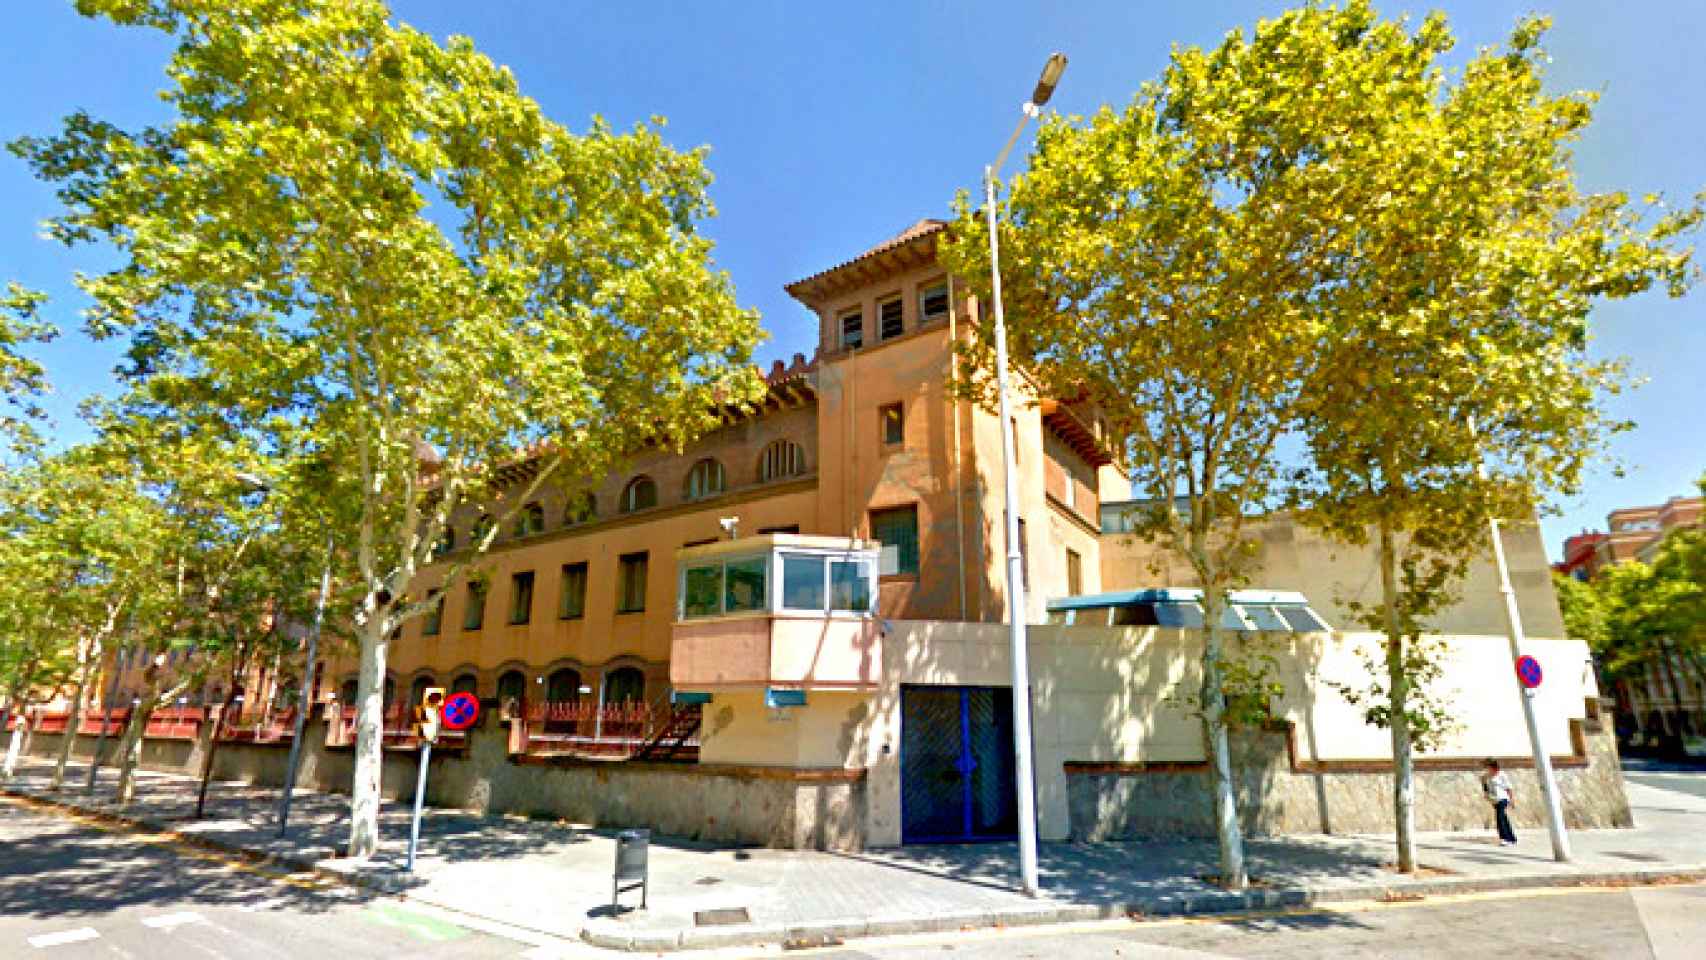 Fachada de la cárcel de mujeres de Wad-Ras, en el distrito barcelonés de Sant Martí / CG